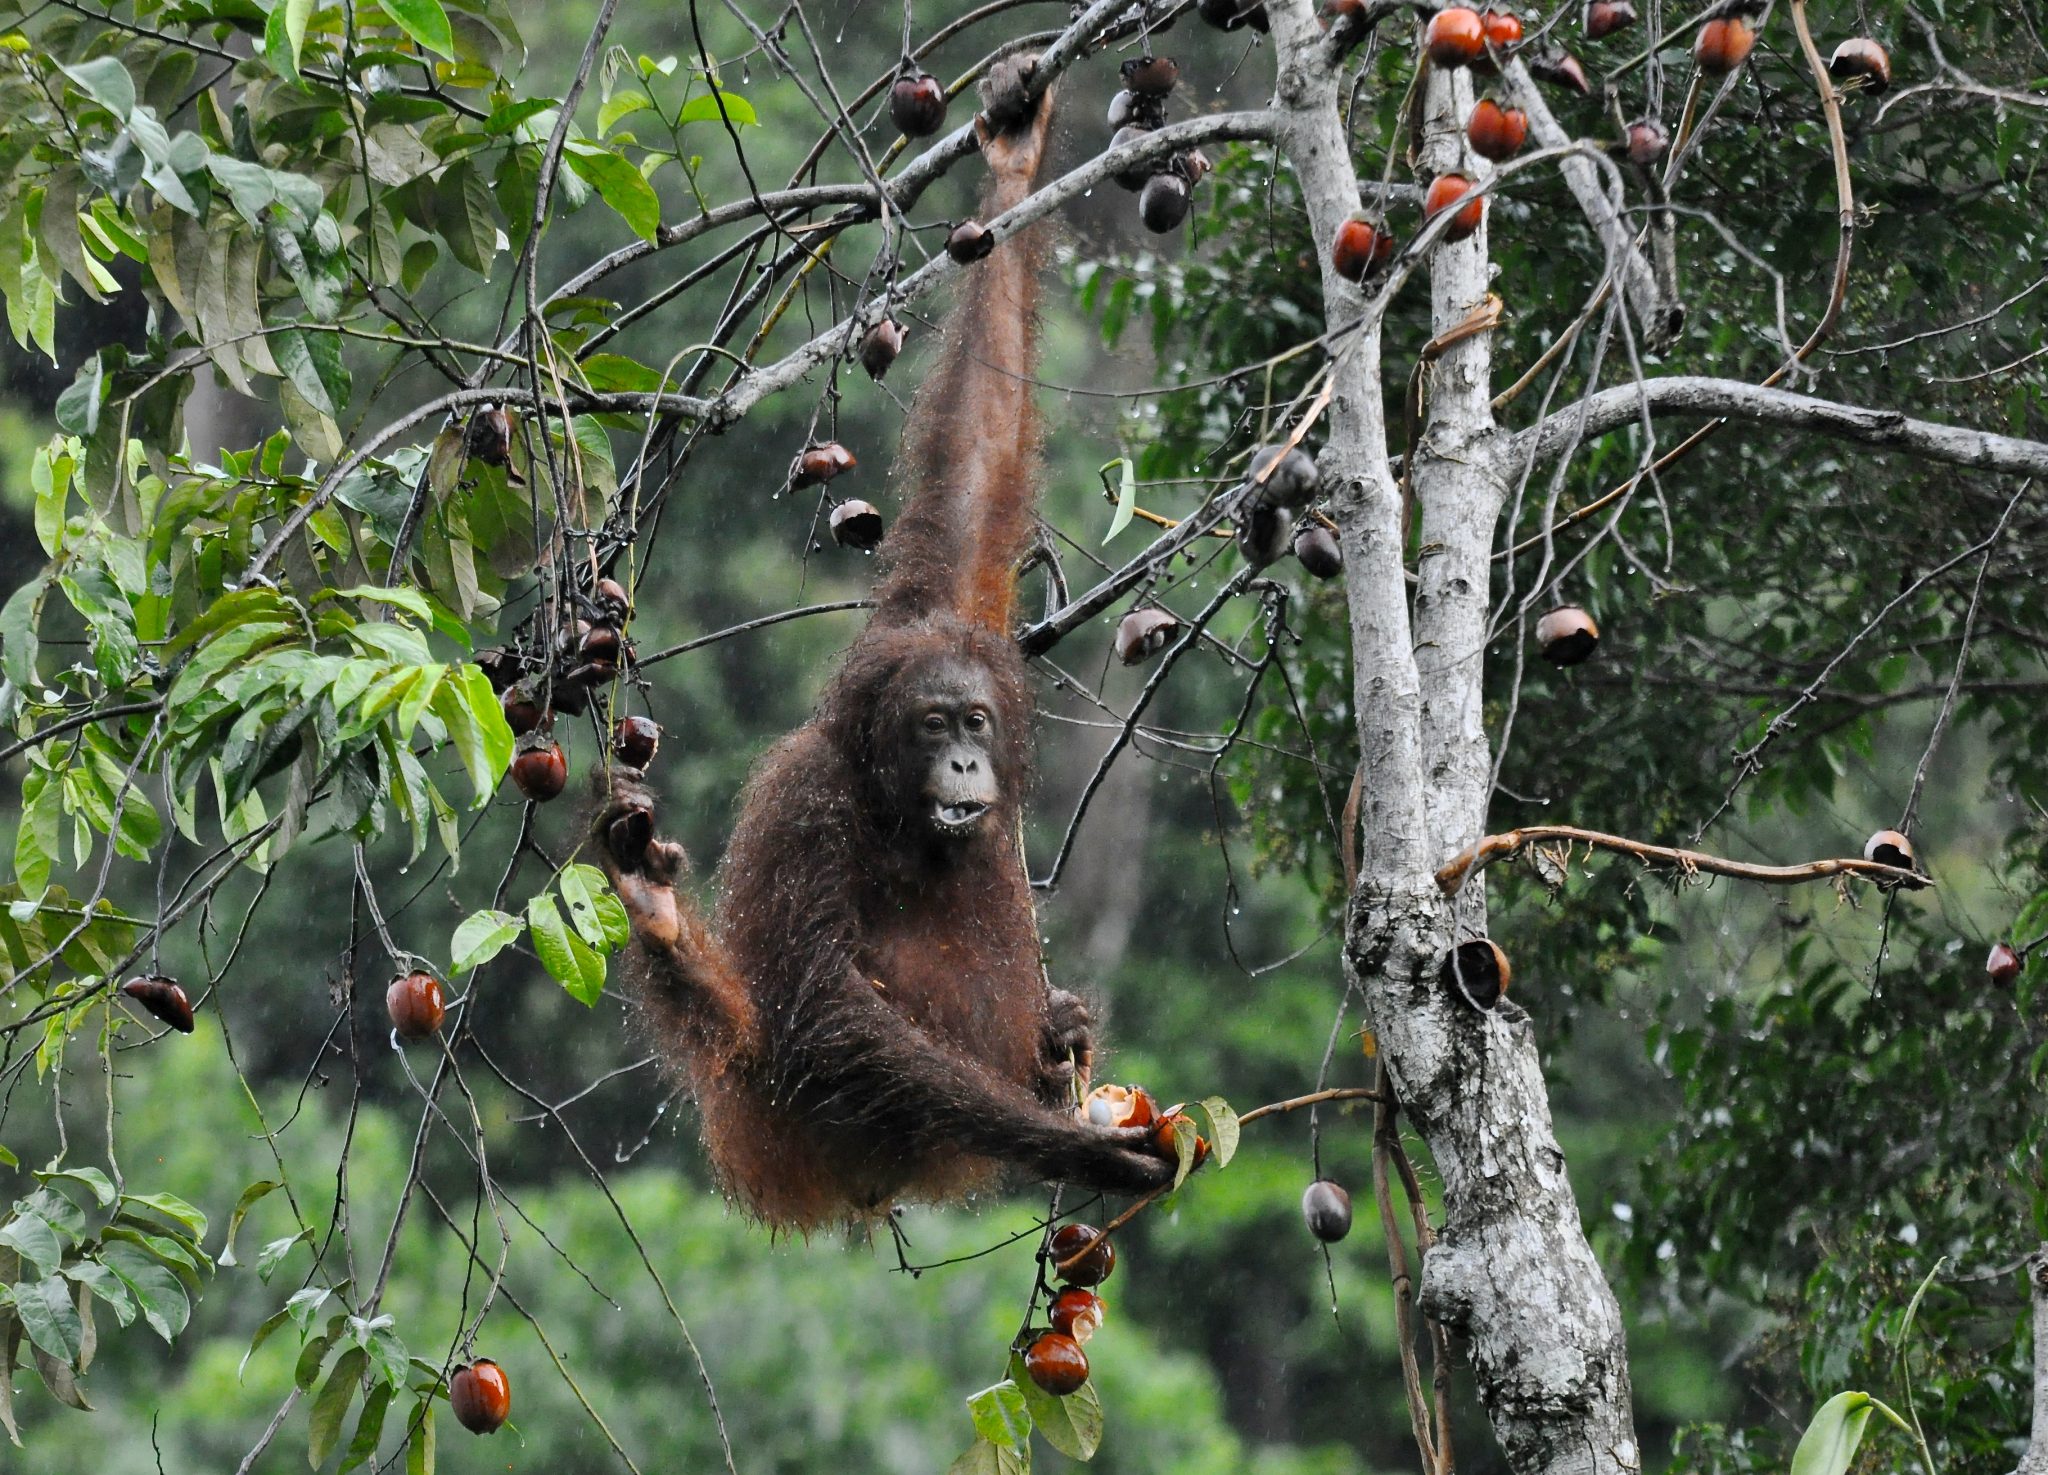 Arboreal orangutan eating fruit